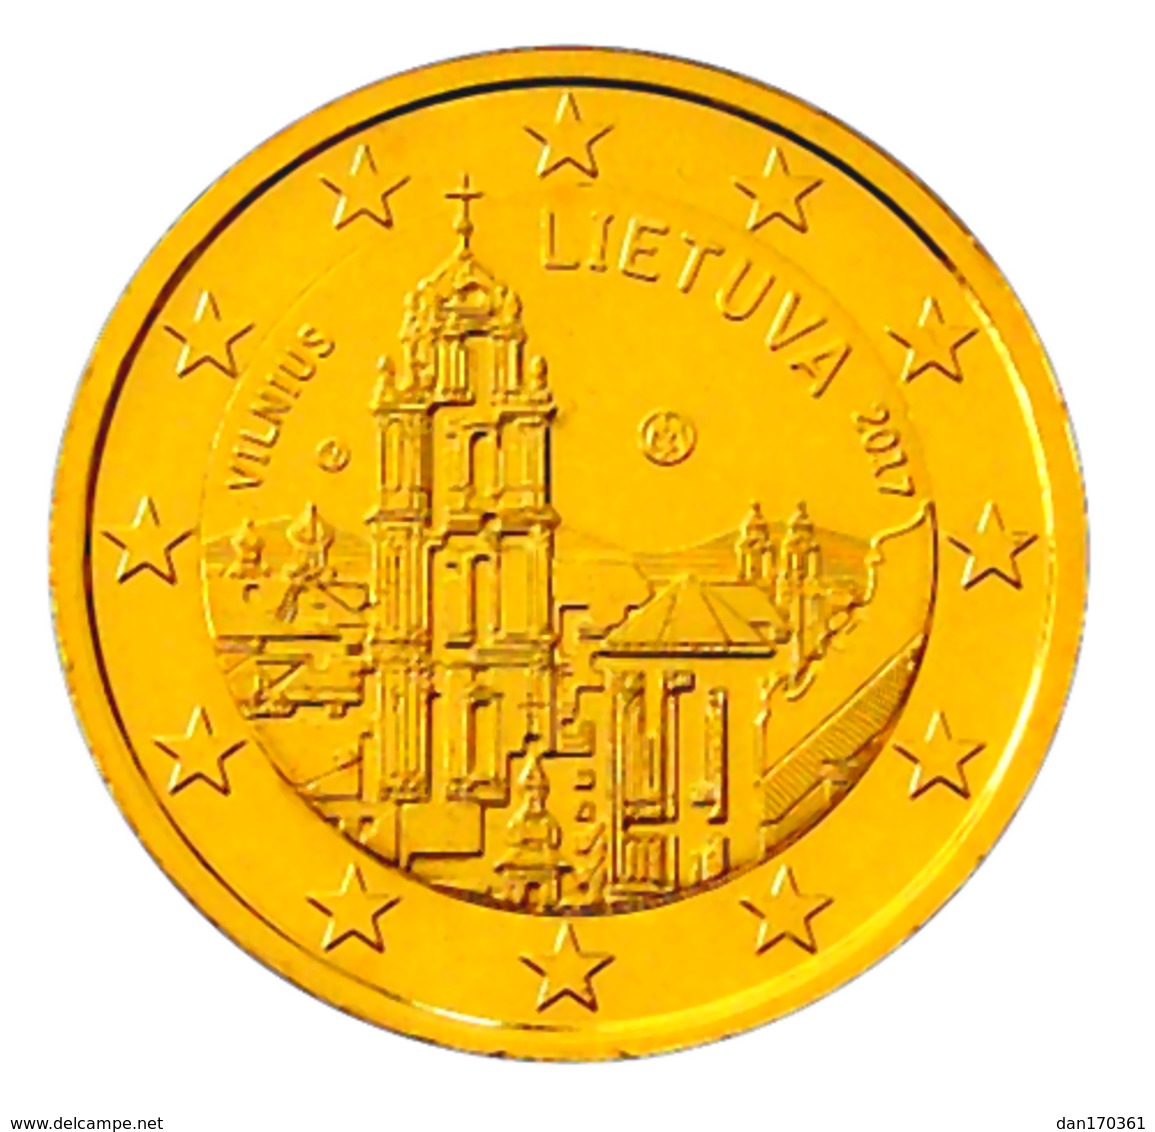 LITUANIE 2017 - 2 EUROS COMMEMORATIVE - VILNIUS -  PLAQUE OR - Lithuania